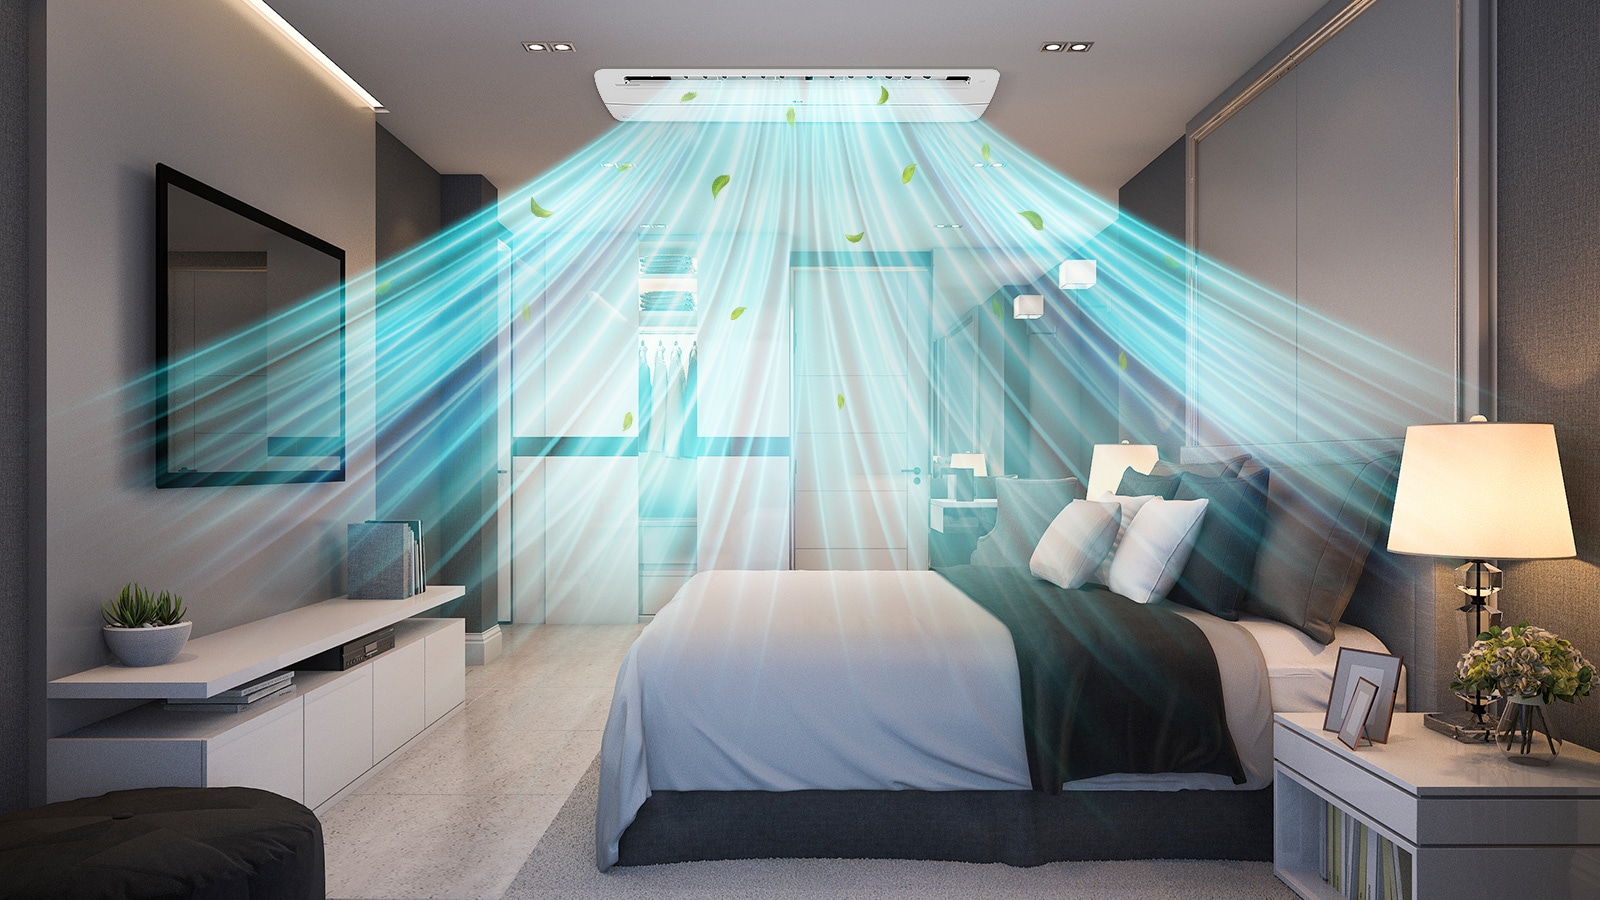 صورة يظهر بها مكيف كاسيت أحادي الاتجاه مثبت بسقف غرفة النوم يوفر هواء نظيفًا وباردًا.